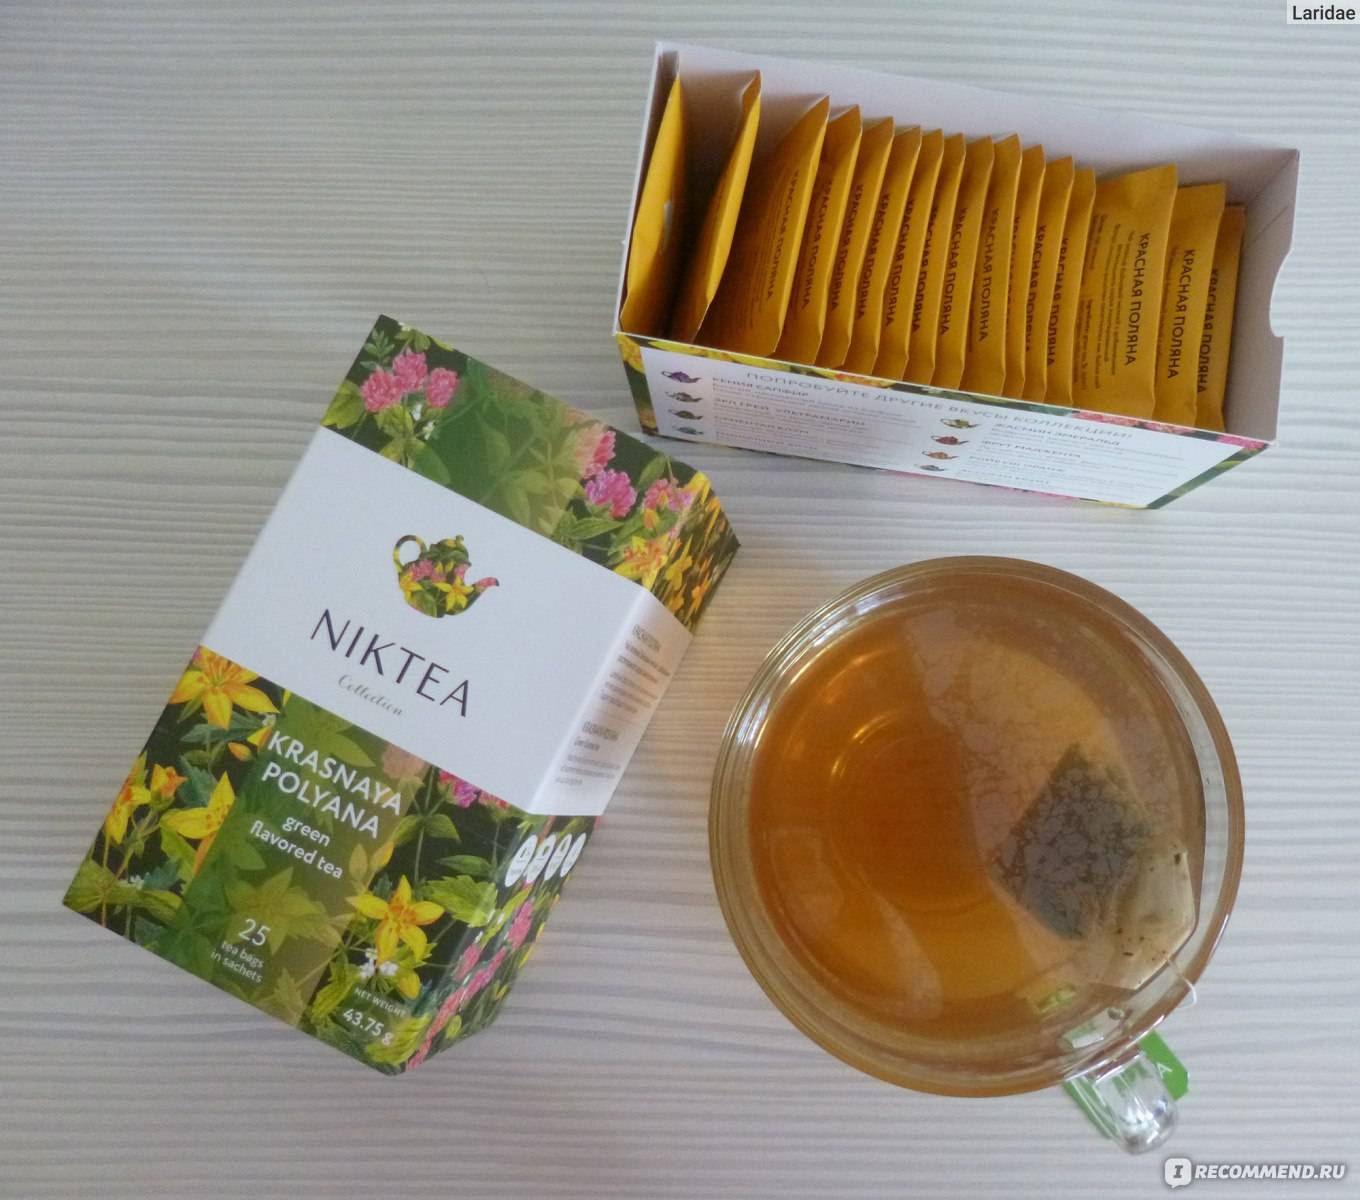 Как выбрать хороший чай в пакетиках? рейтинг марок пакетированного чая